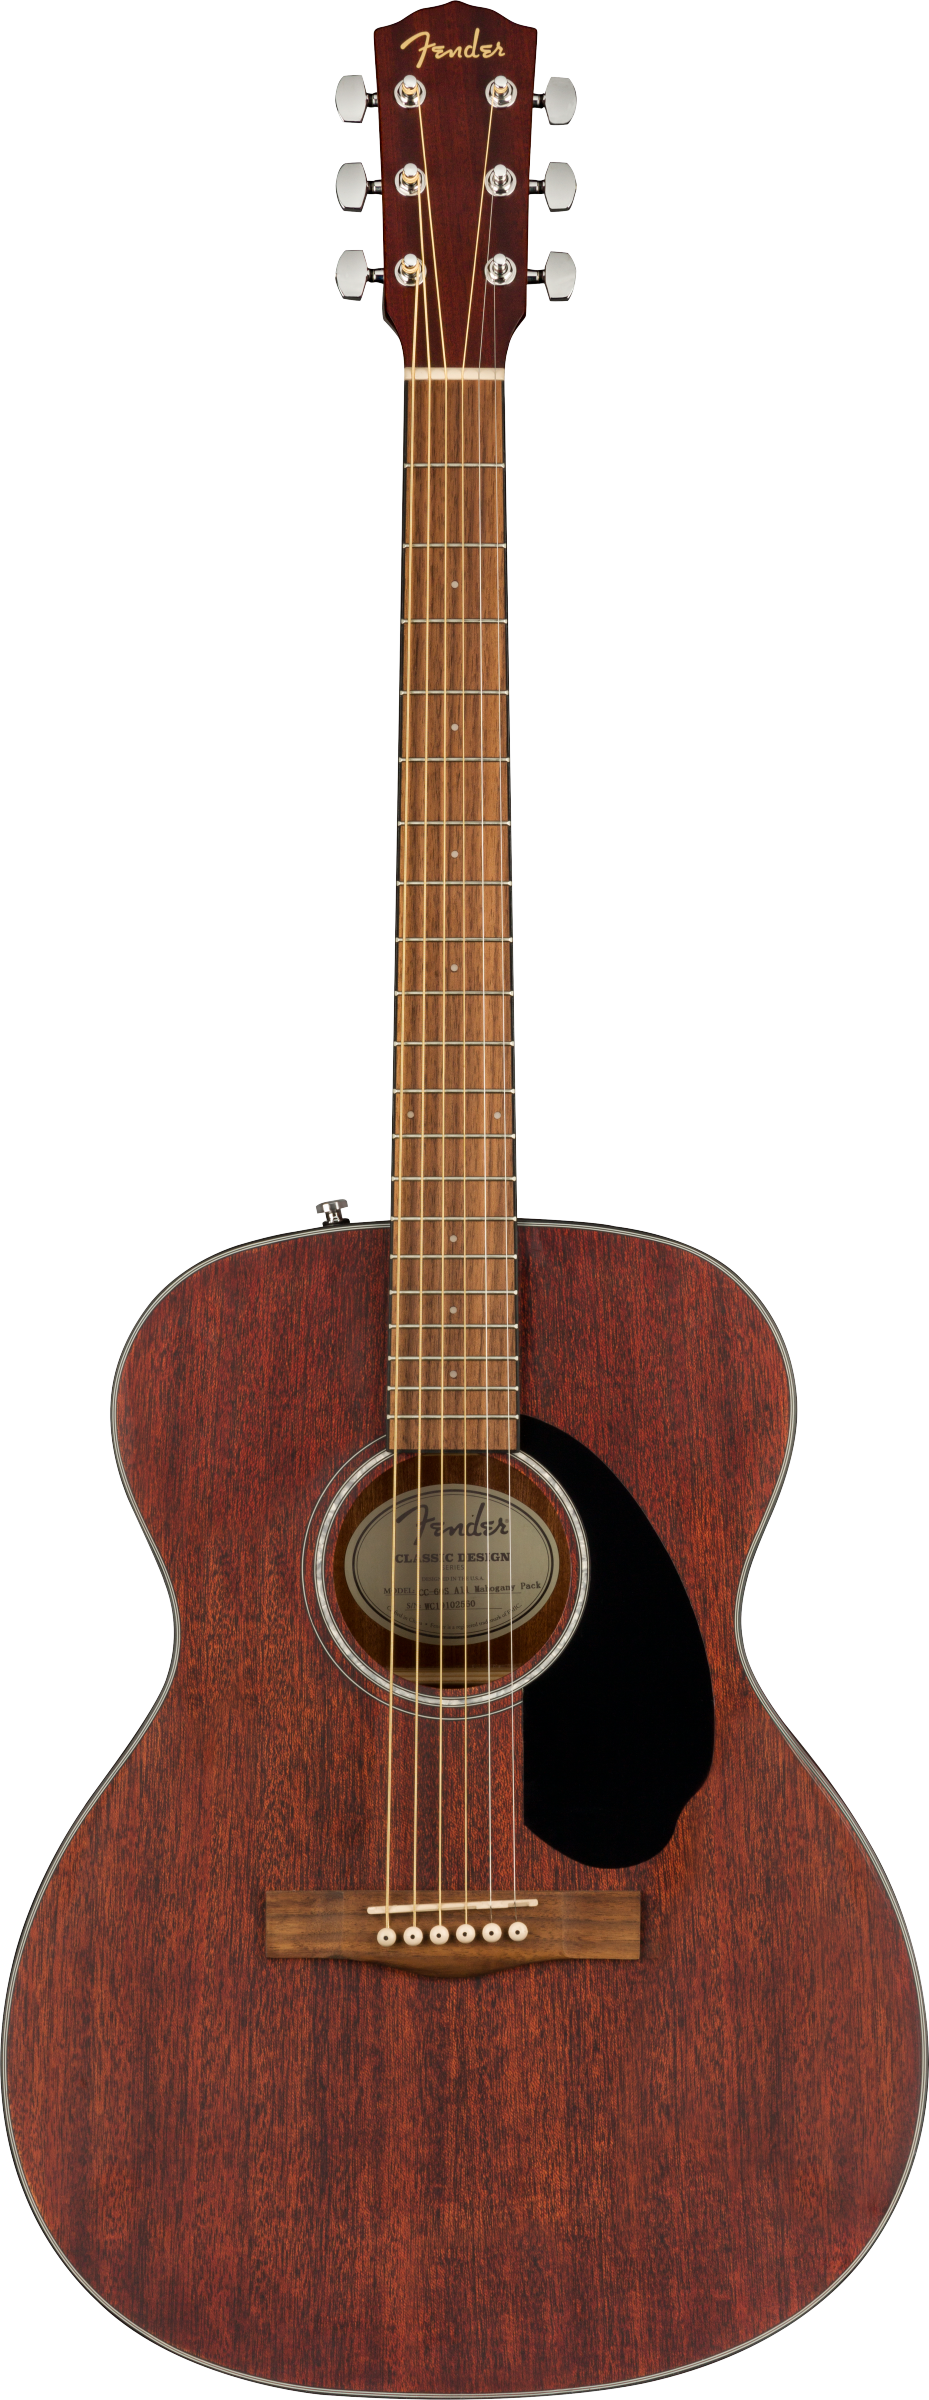 CC-60S Concert Pack V2 Acoustic Guitar, Mahogany